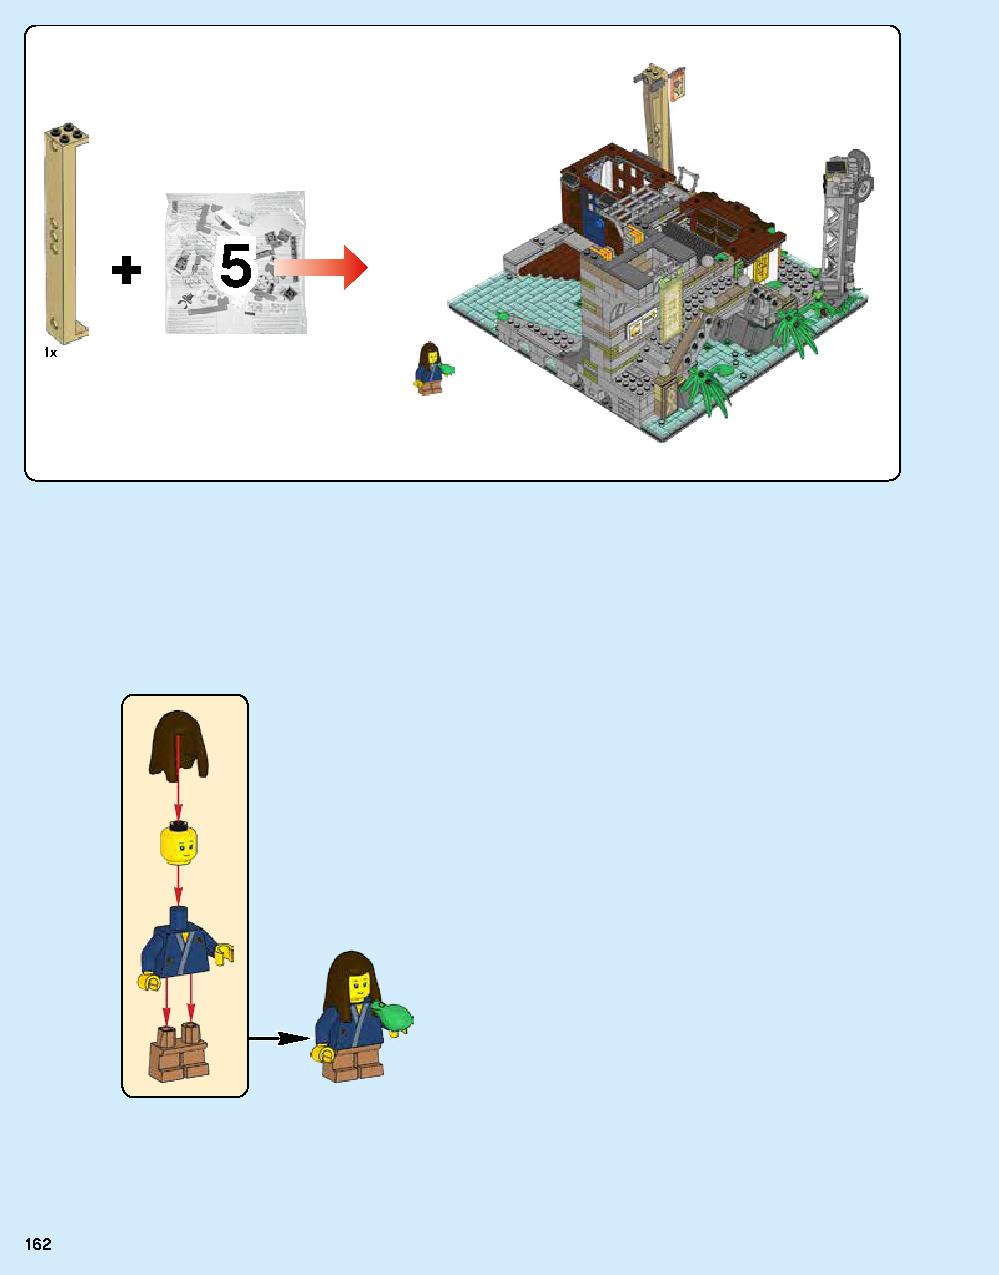 ニンジャゴー シティ 70620 レゴの商品情報 レゴの説明書・組立方法 162 page